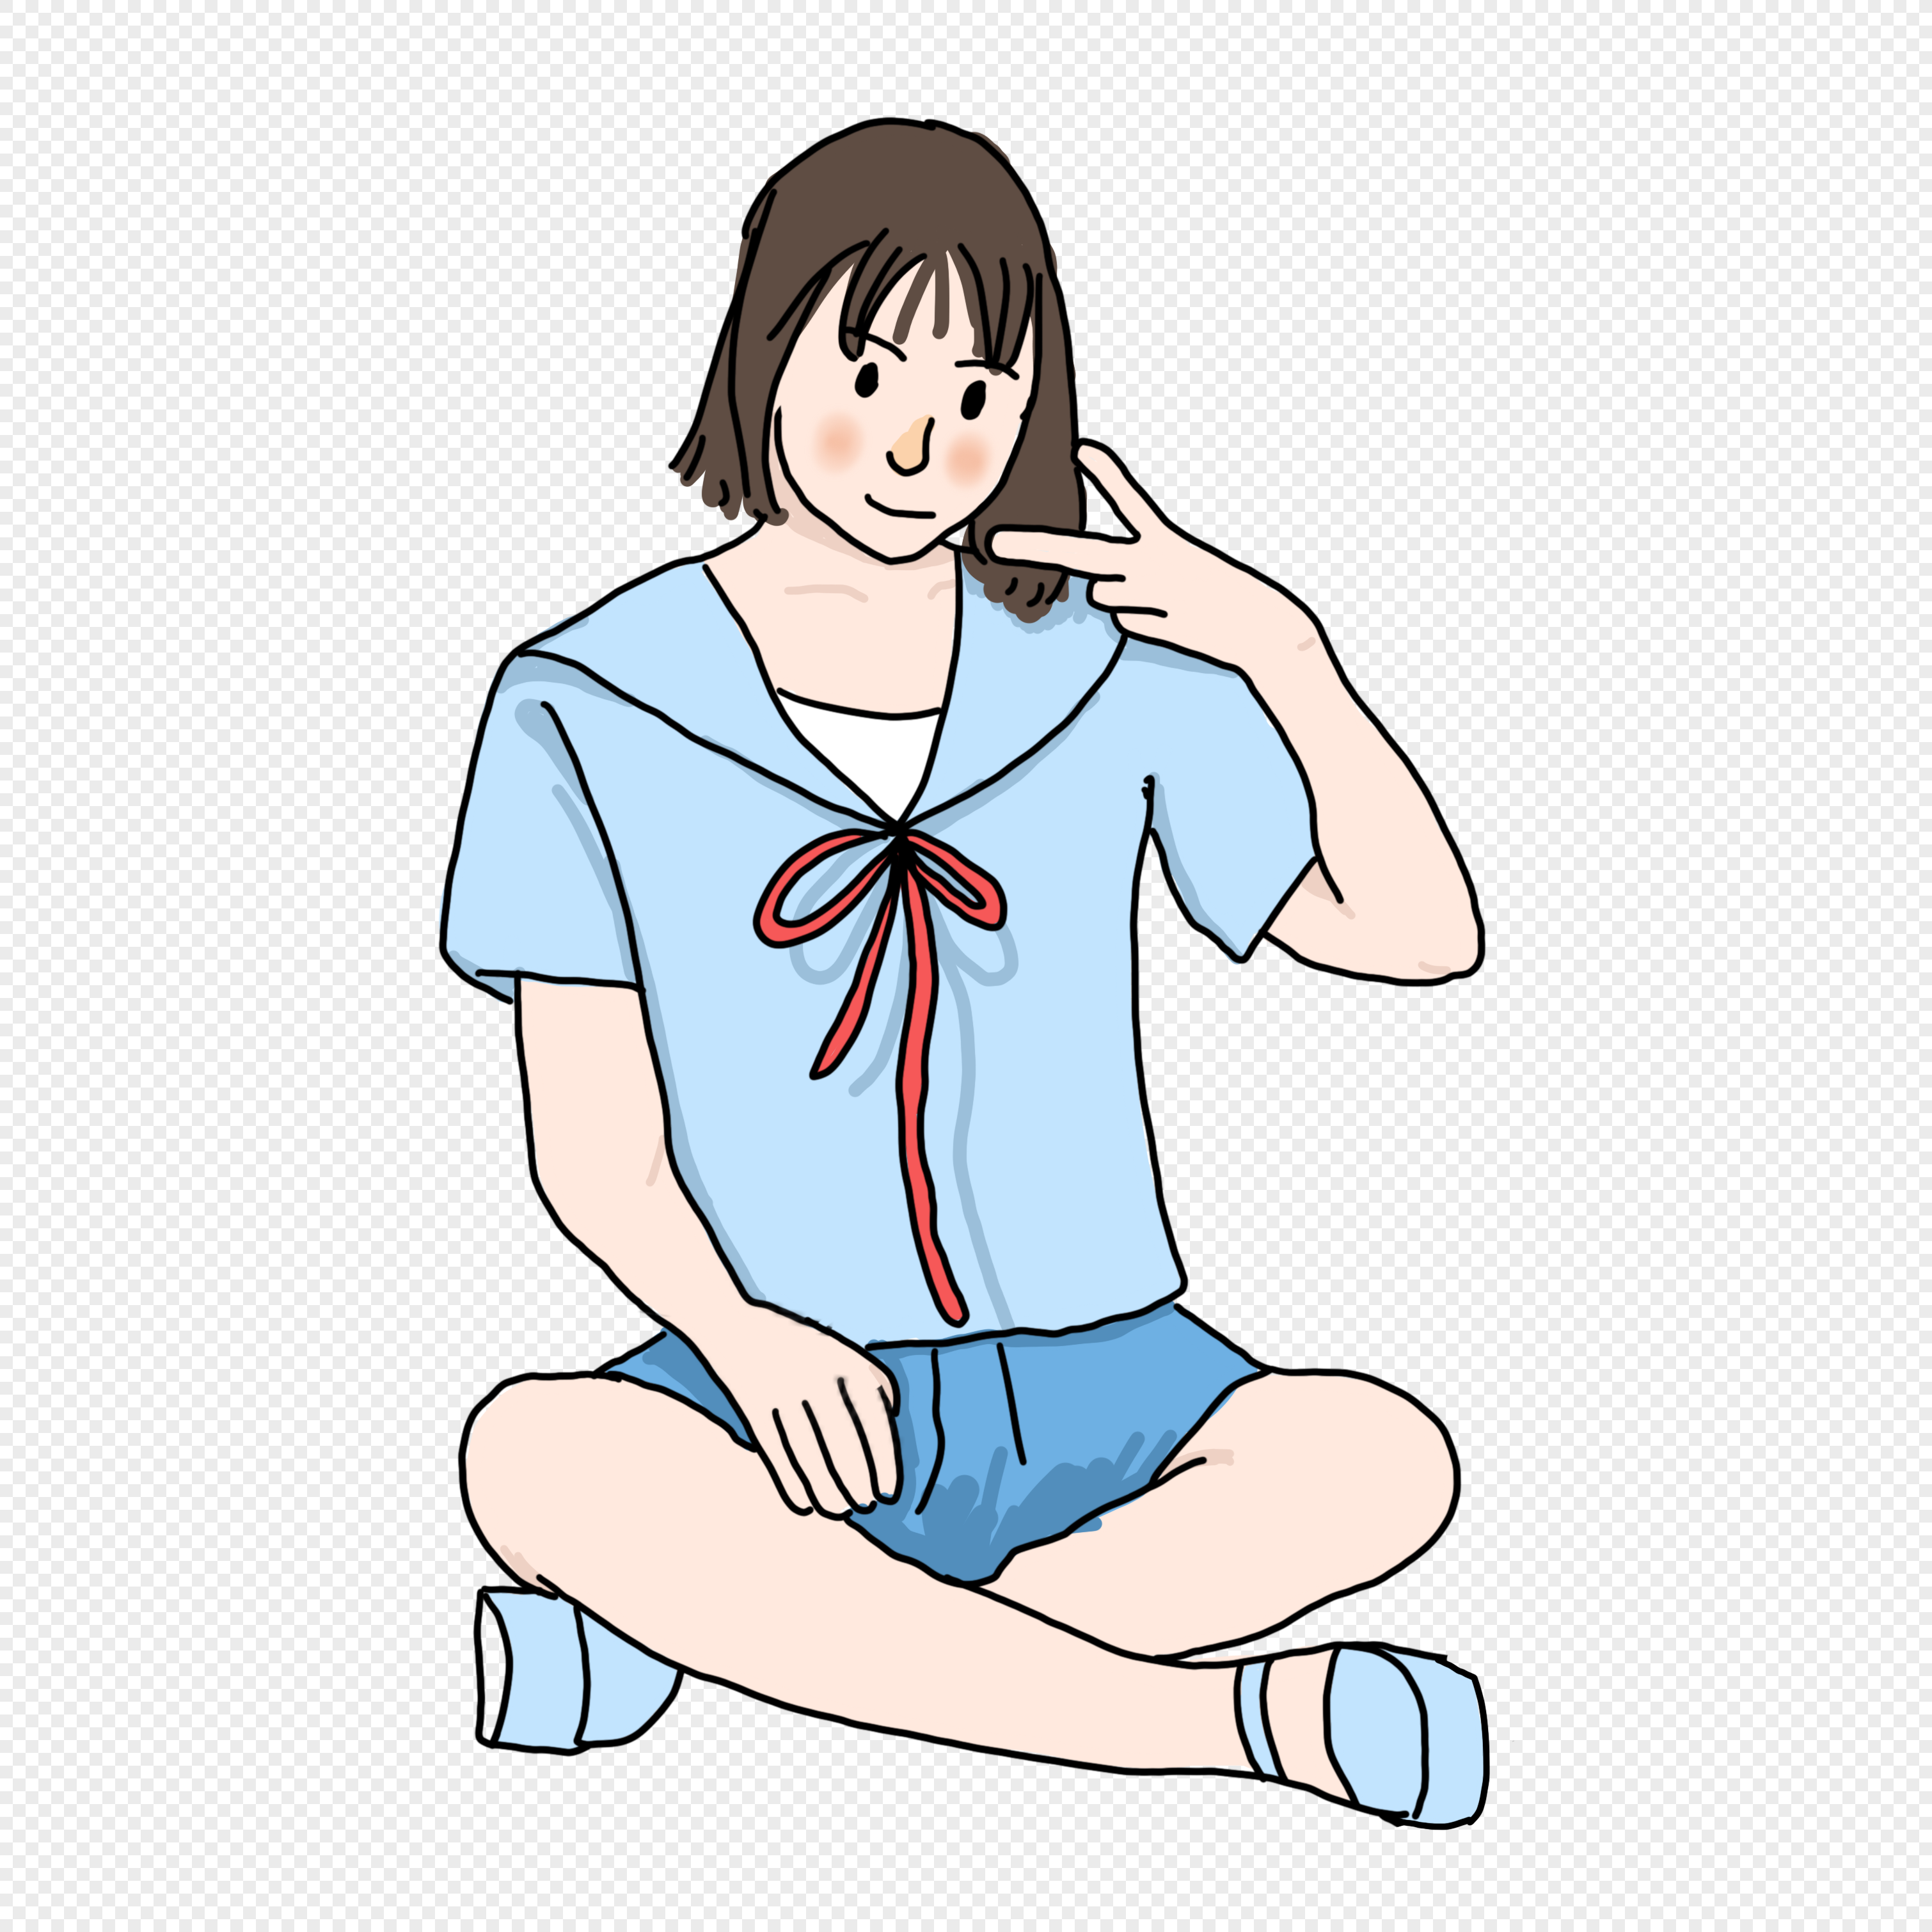 Аниме персонаж со скрещенными руками на груди